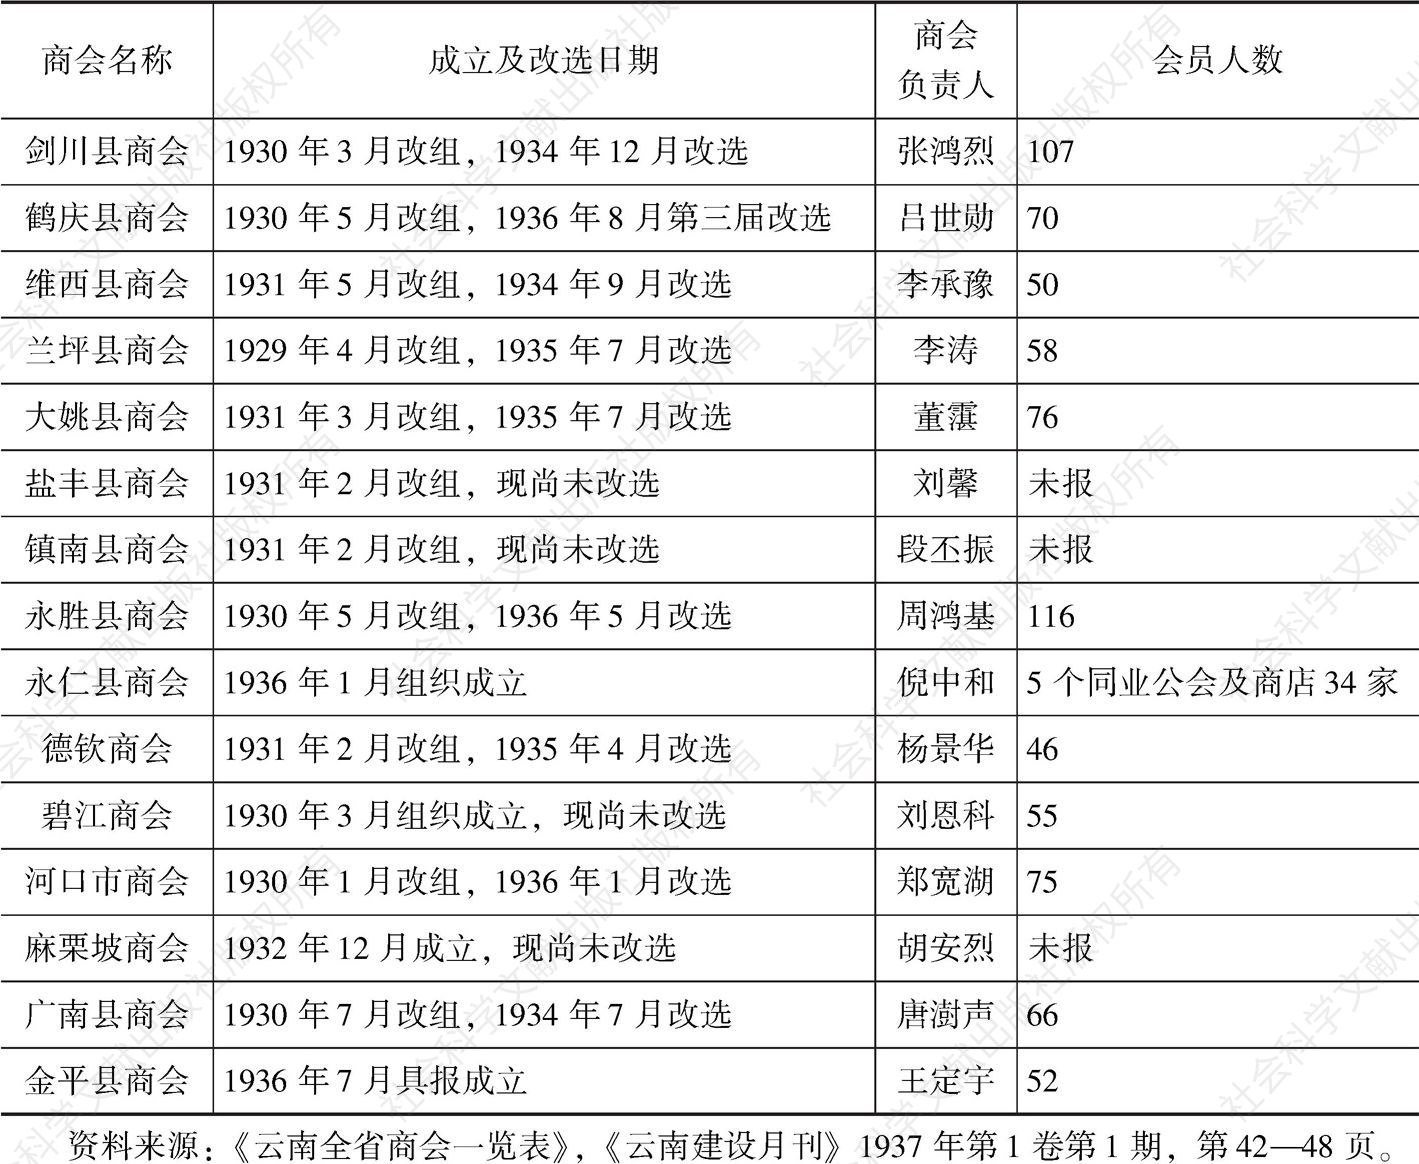 表3-1 1936年云南各地商会一览表-续表3